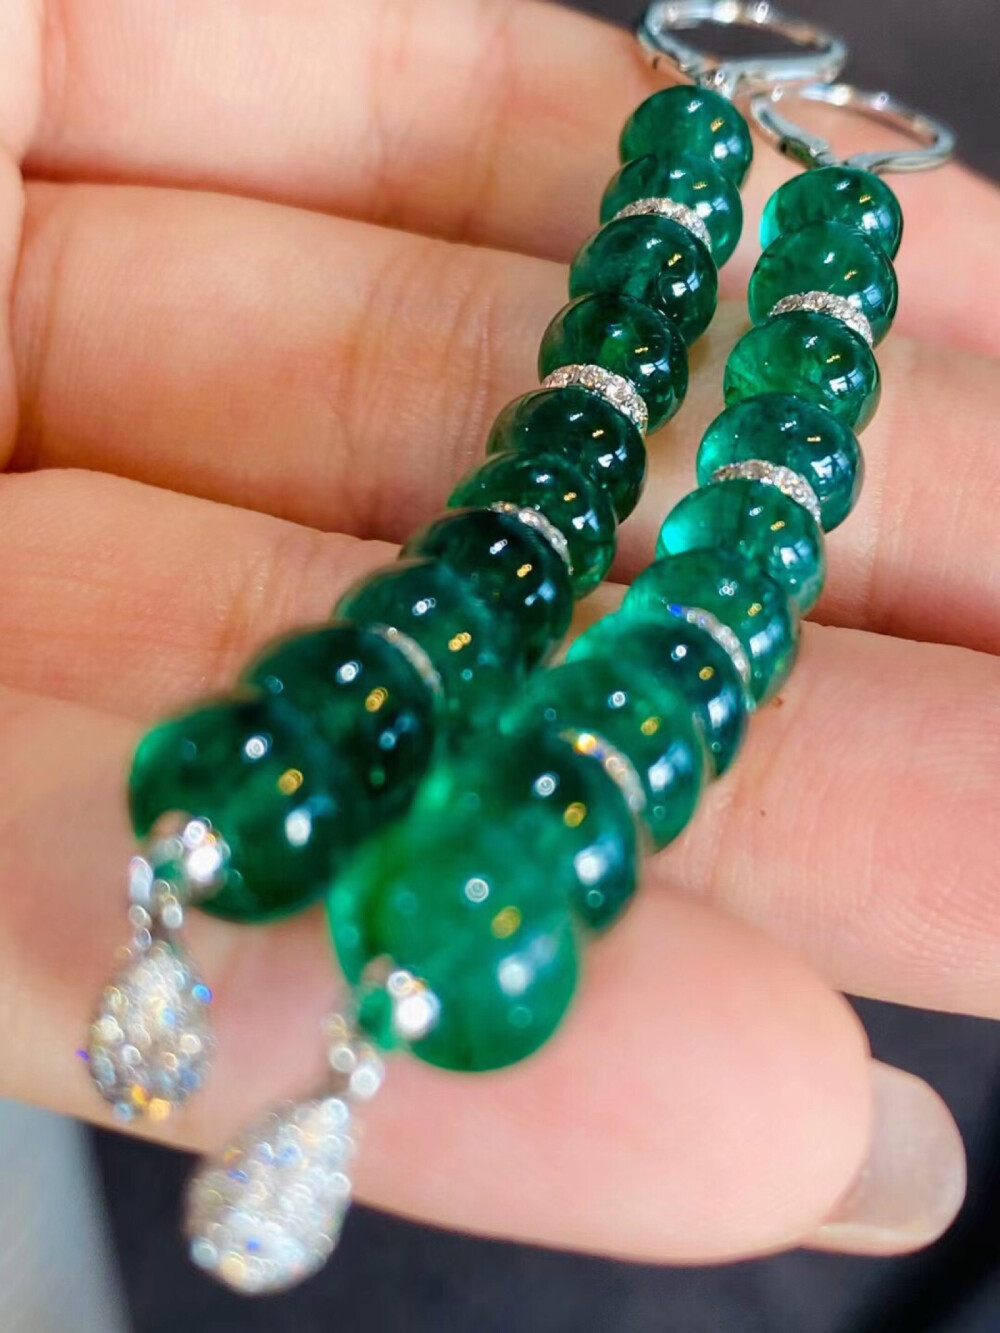 高级珠宝即视感，超美木佐绿算盘珠钻石耳环，玻璃体祖母绿晶莹通透42ct，钻石镶嵌1ct，成品重12.5克
一步一摇 摇曳生辉